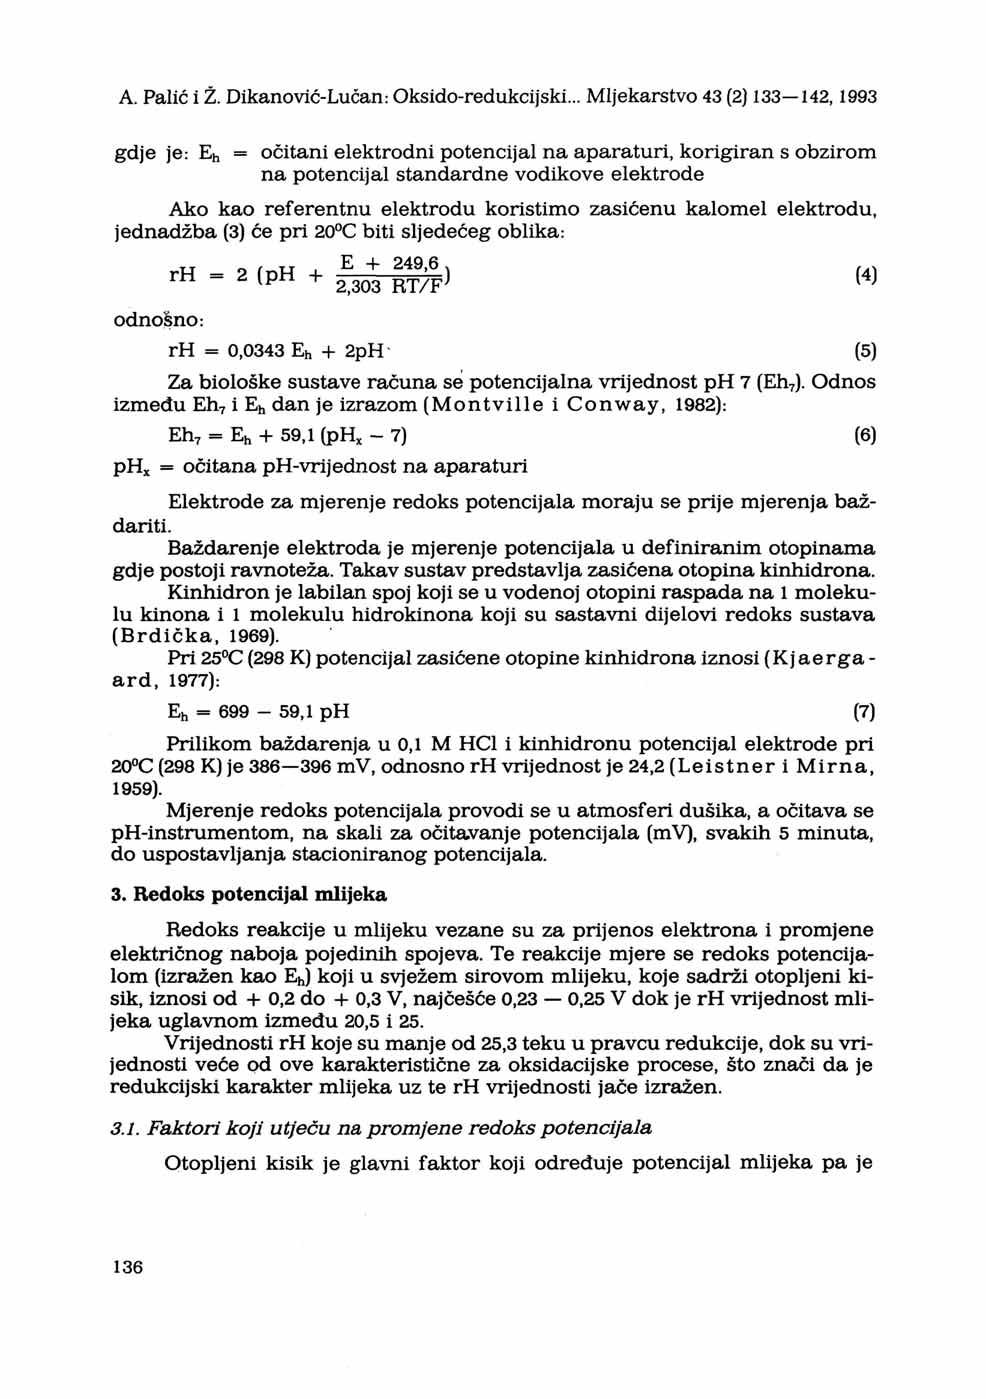 A. Palić i Ž. Dikanović-Lučan: Oksido-redukcijski.